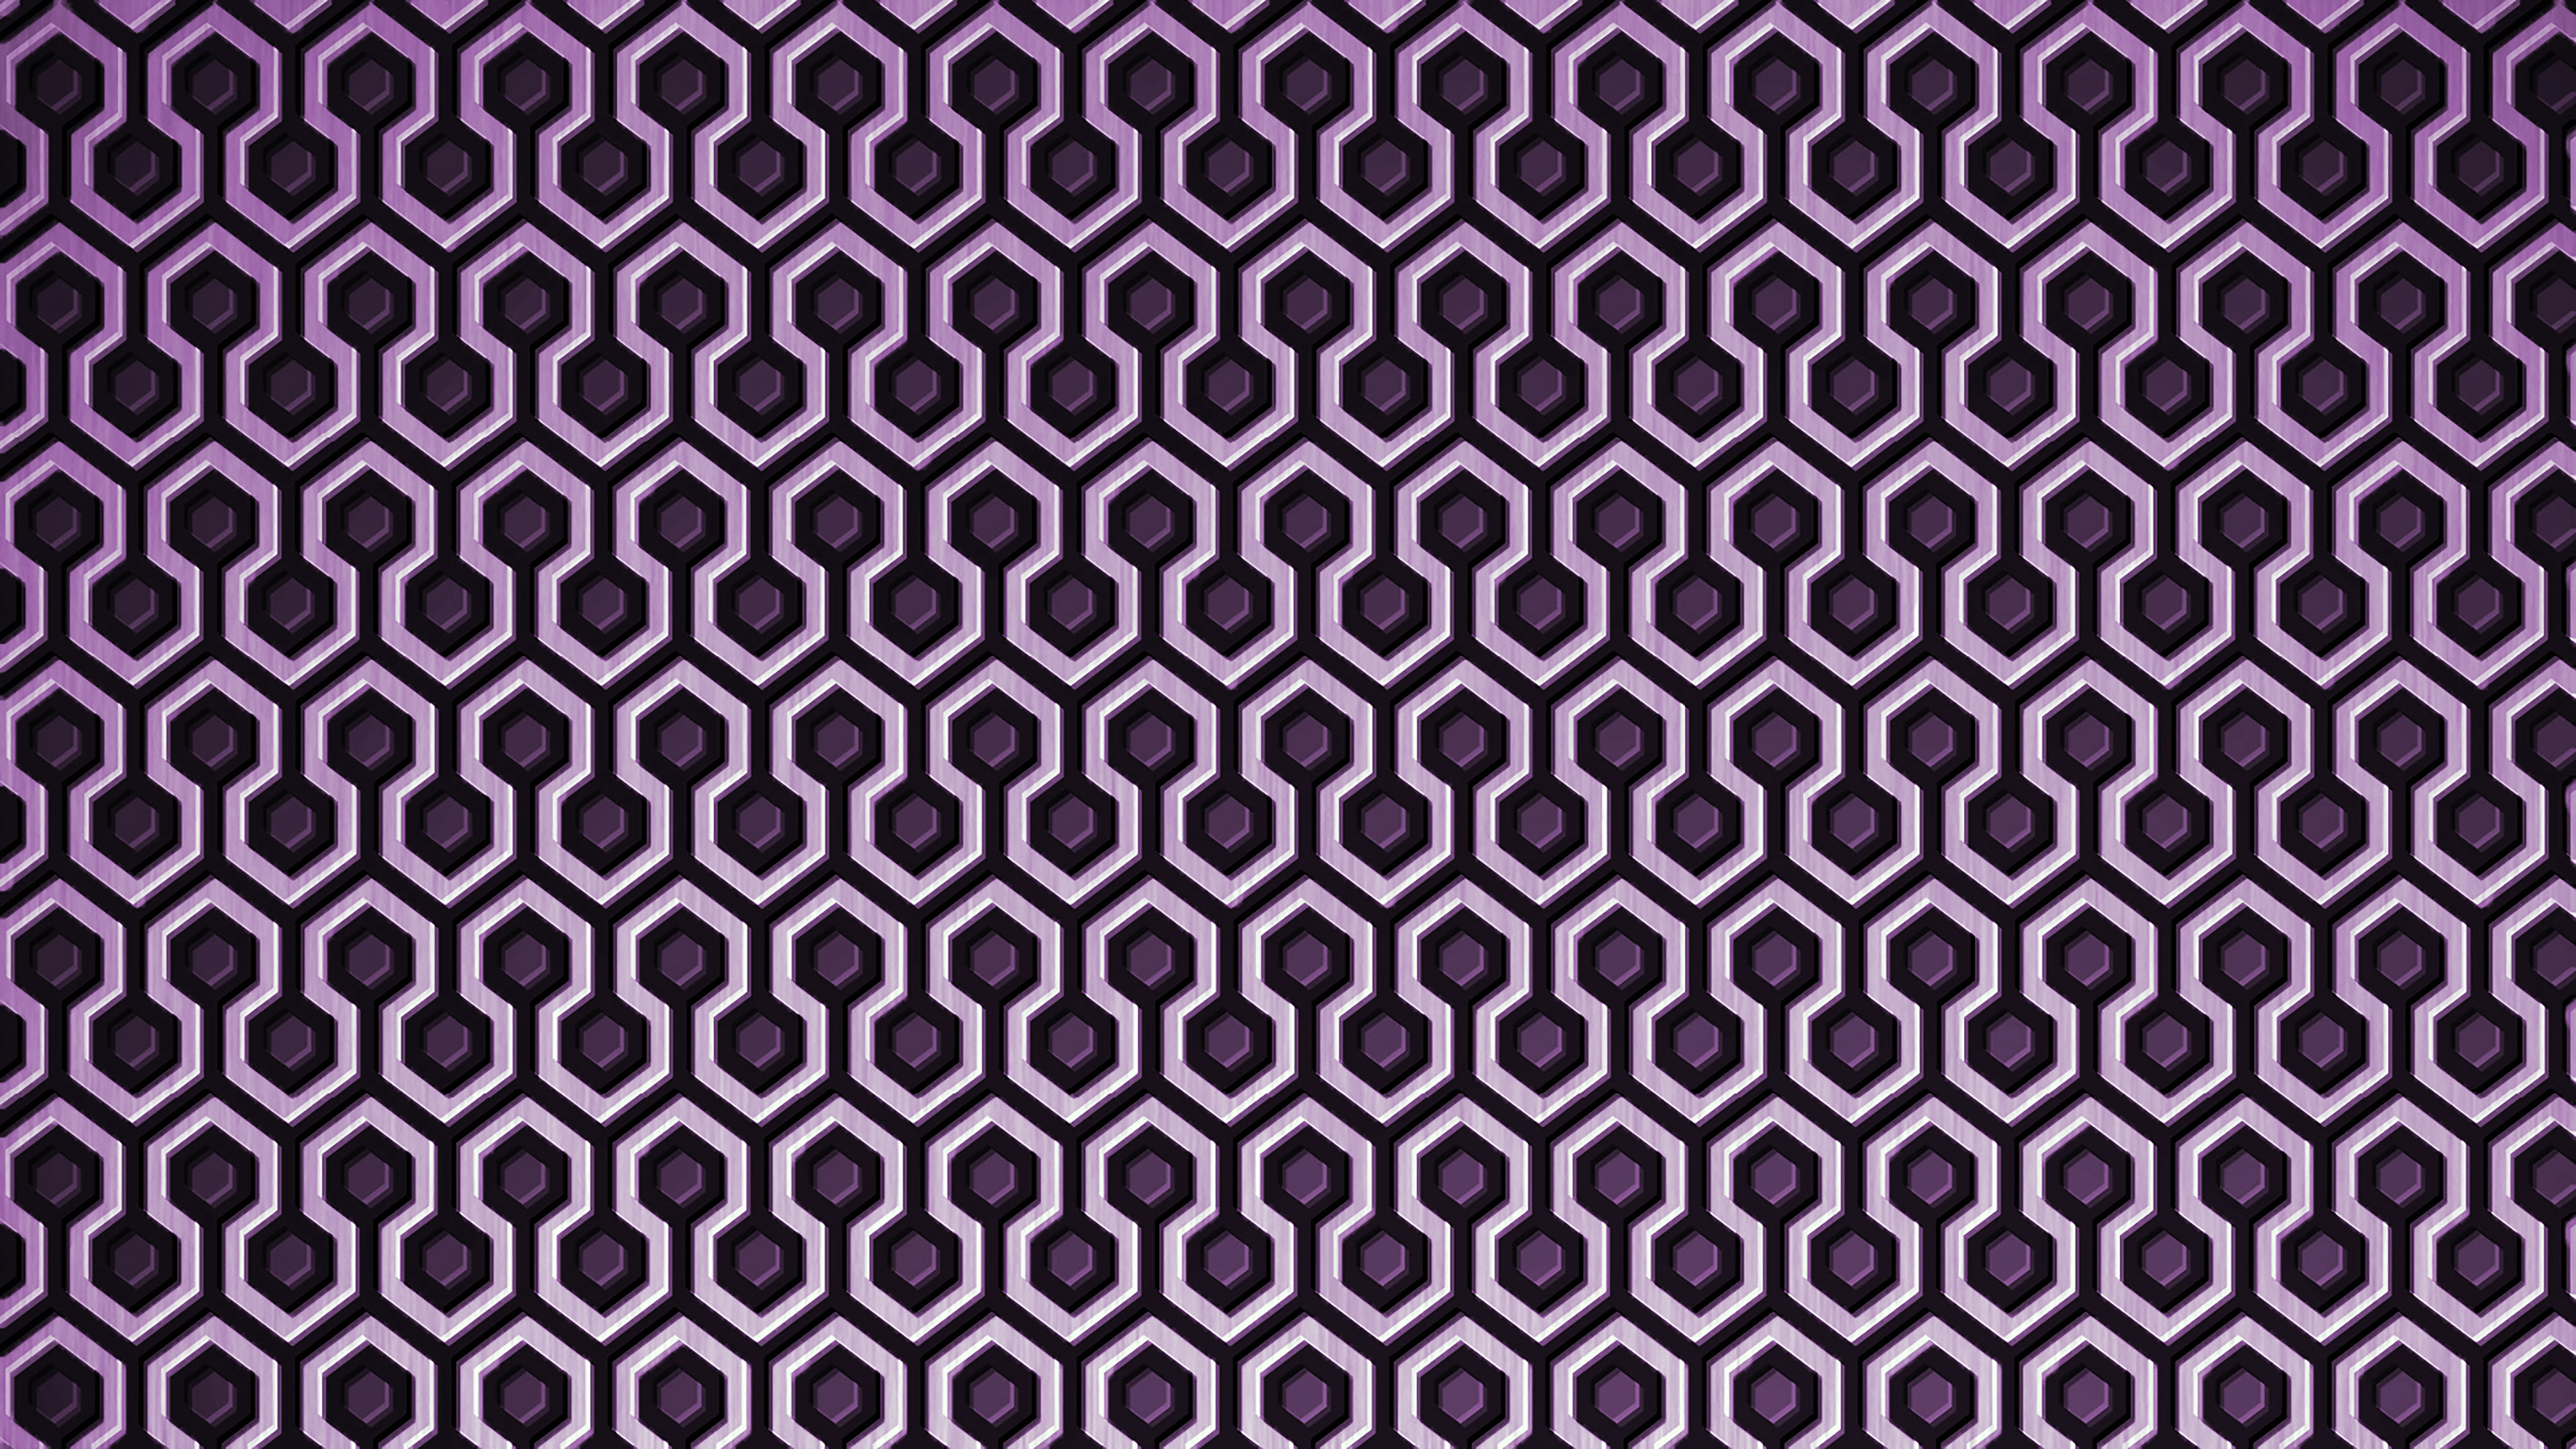 Hexagon Pattern The Shining 3840x2160